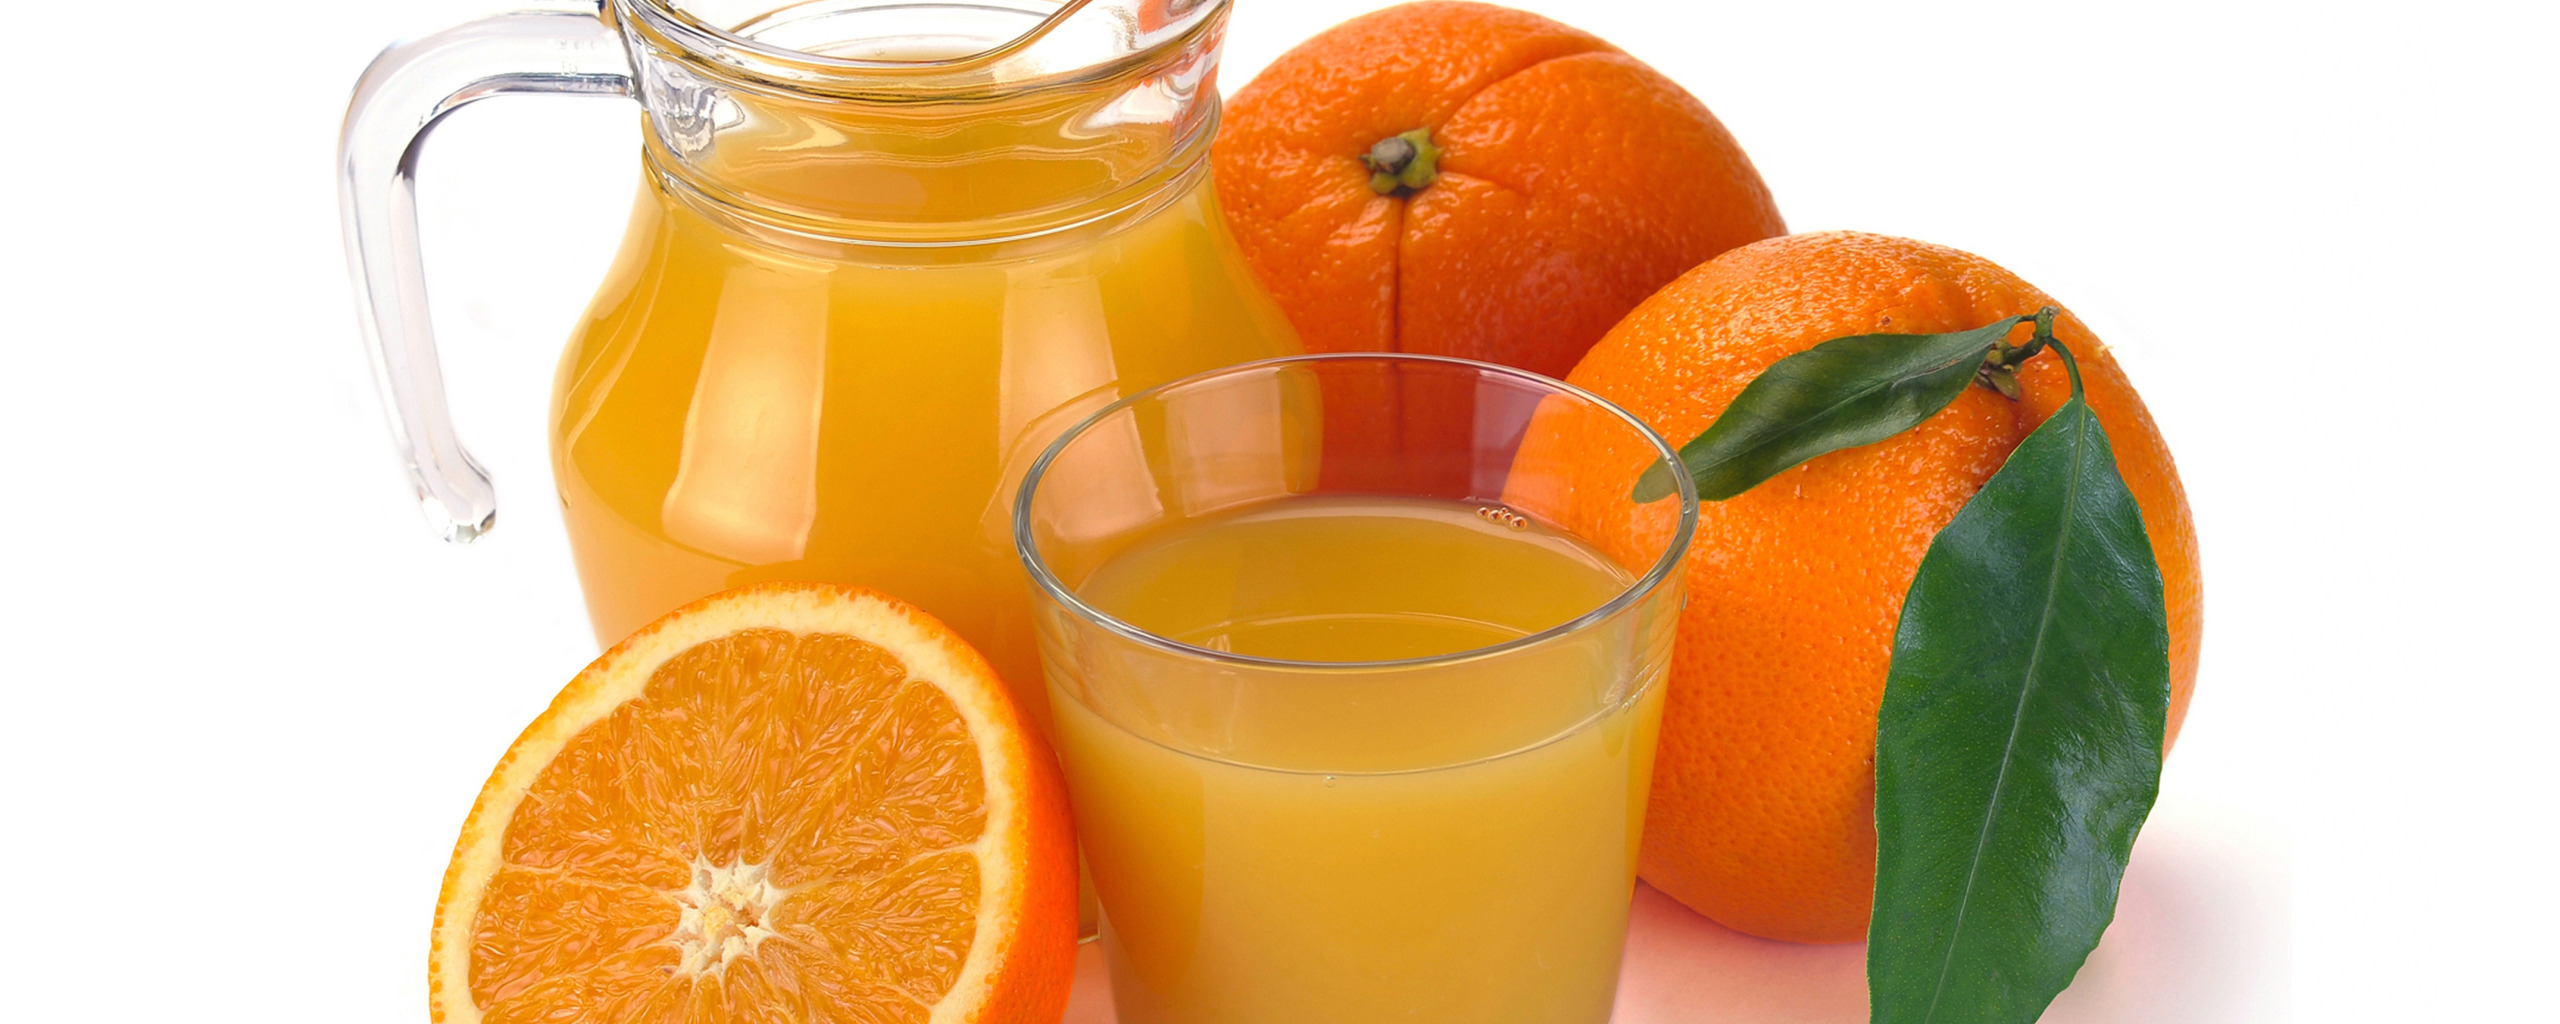 Сок. Апельсиновый сок. Апельсиновый сок без фона. Стакан апельсинового сока.